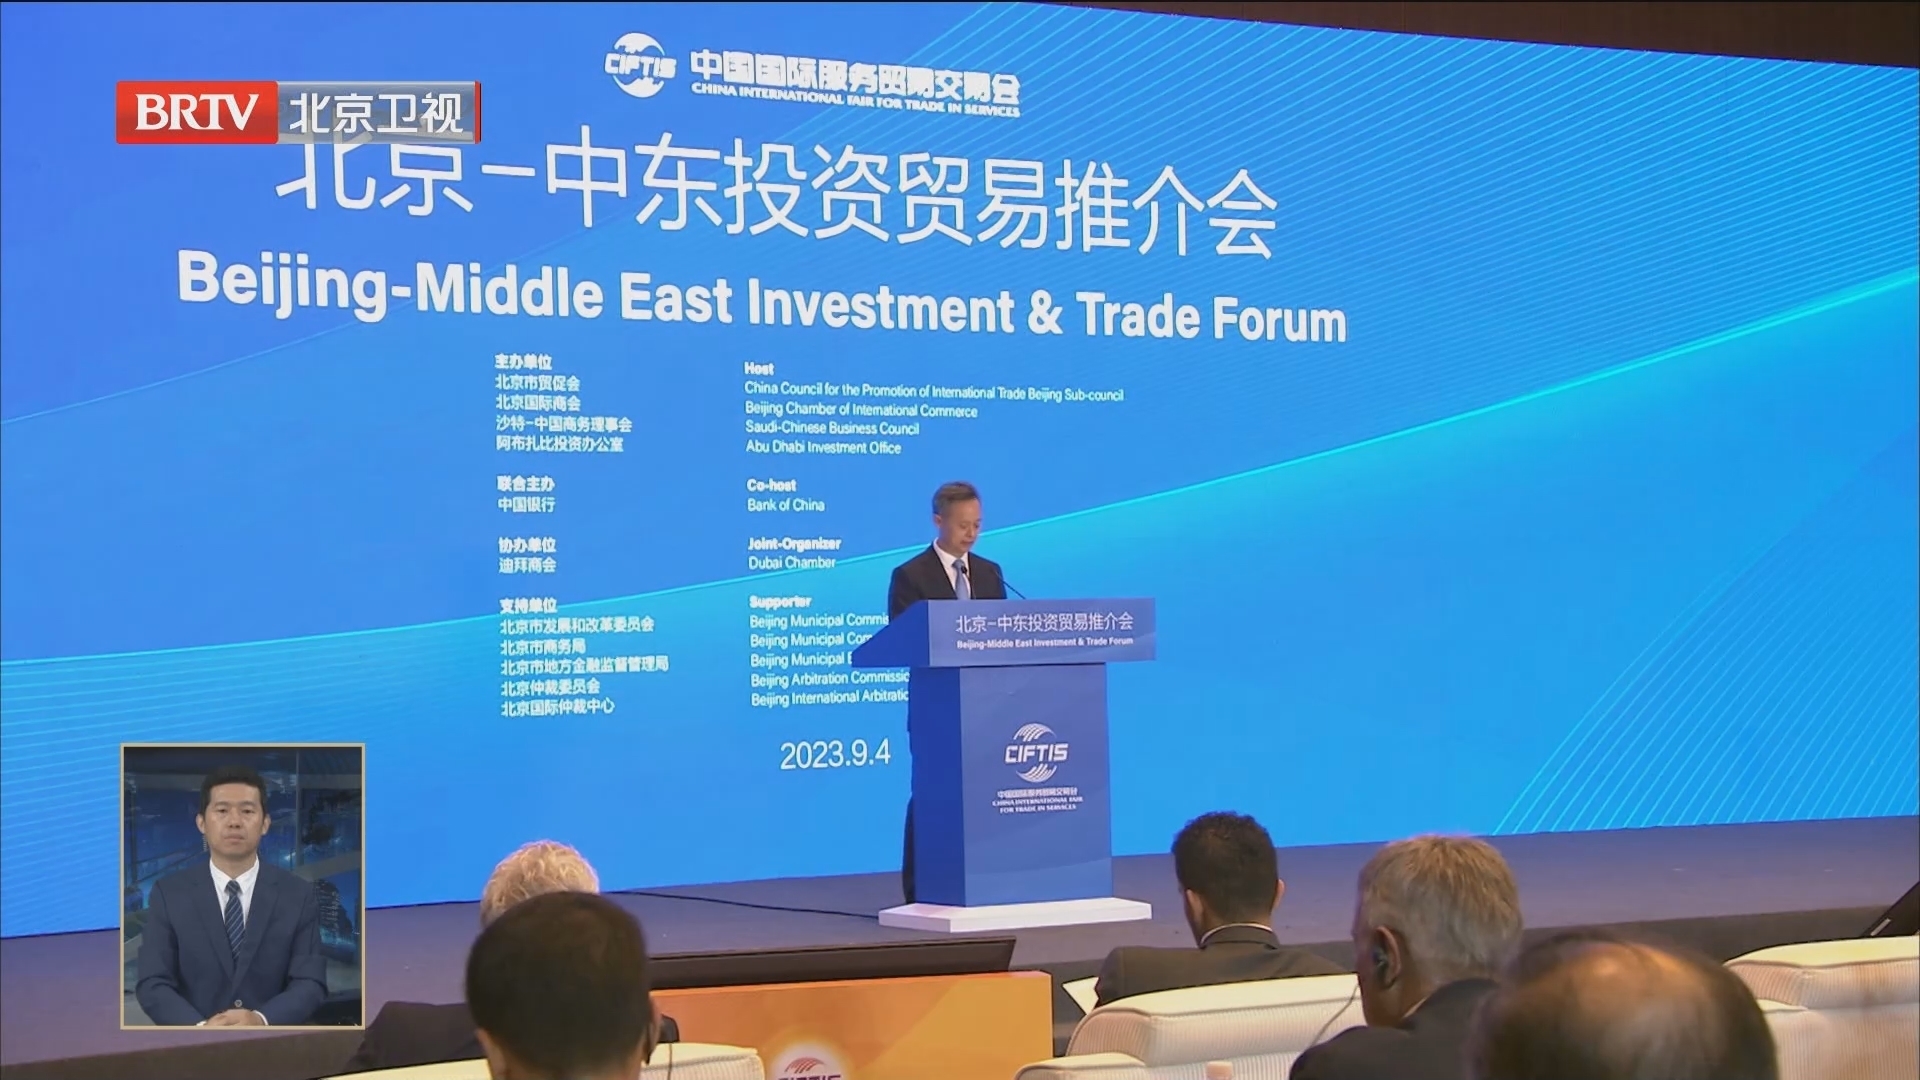 2023服贸会首次举办北京-中东投资贸易推介会